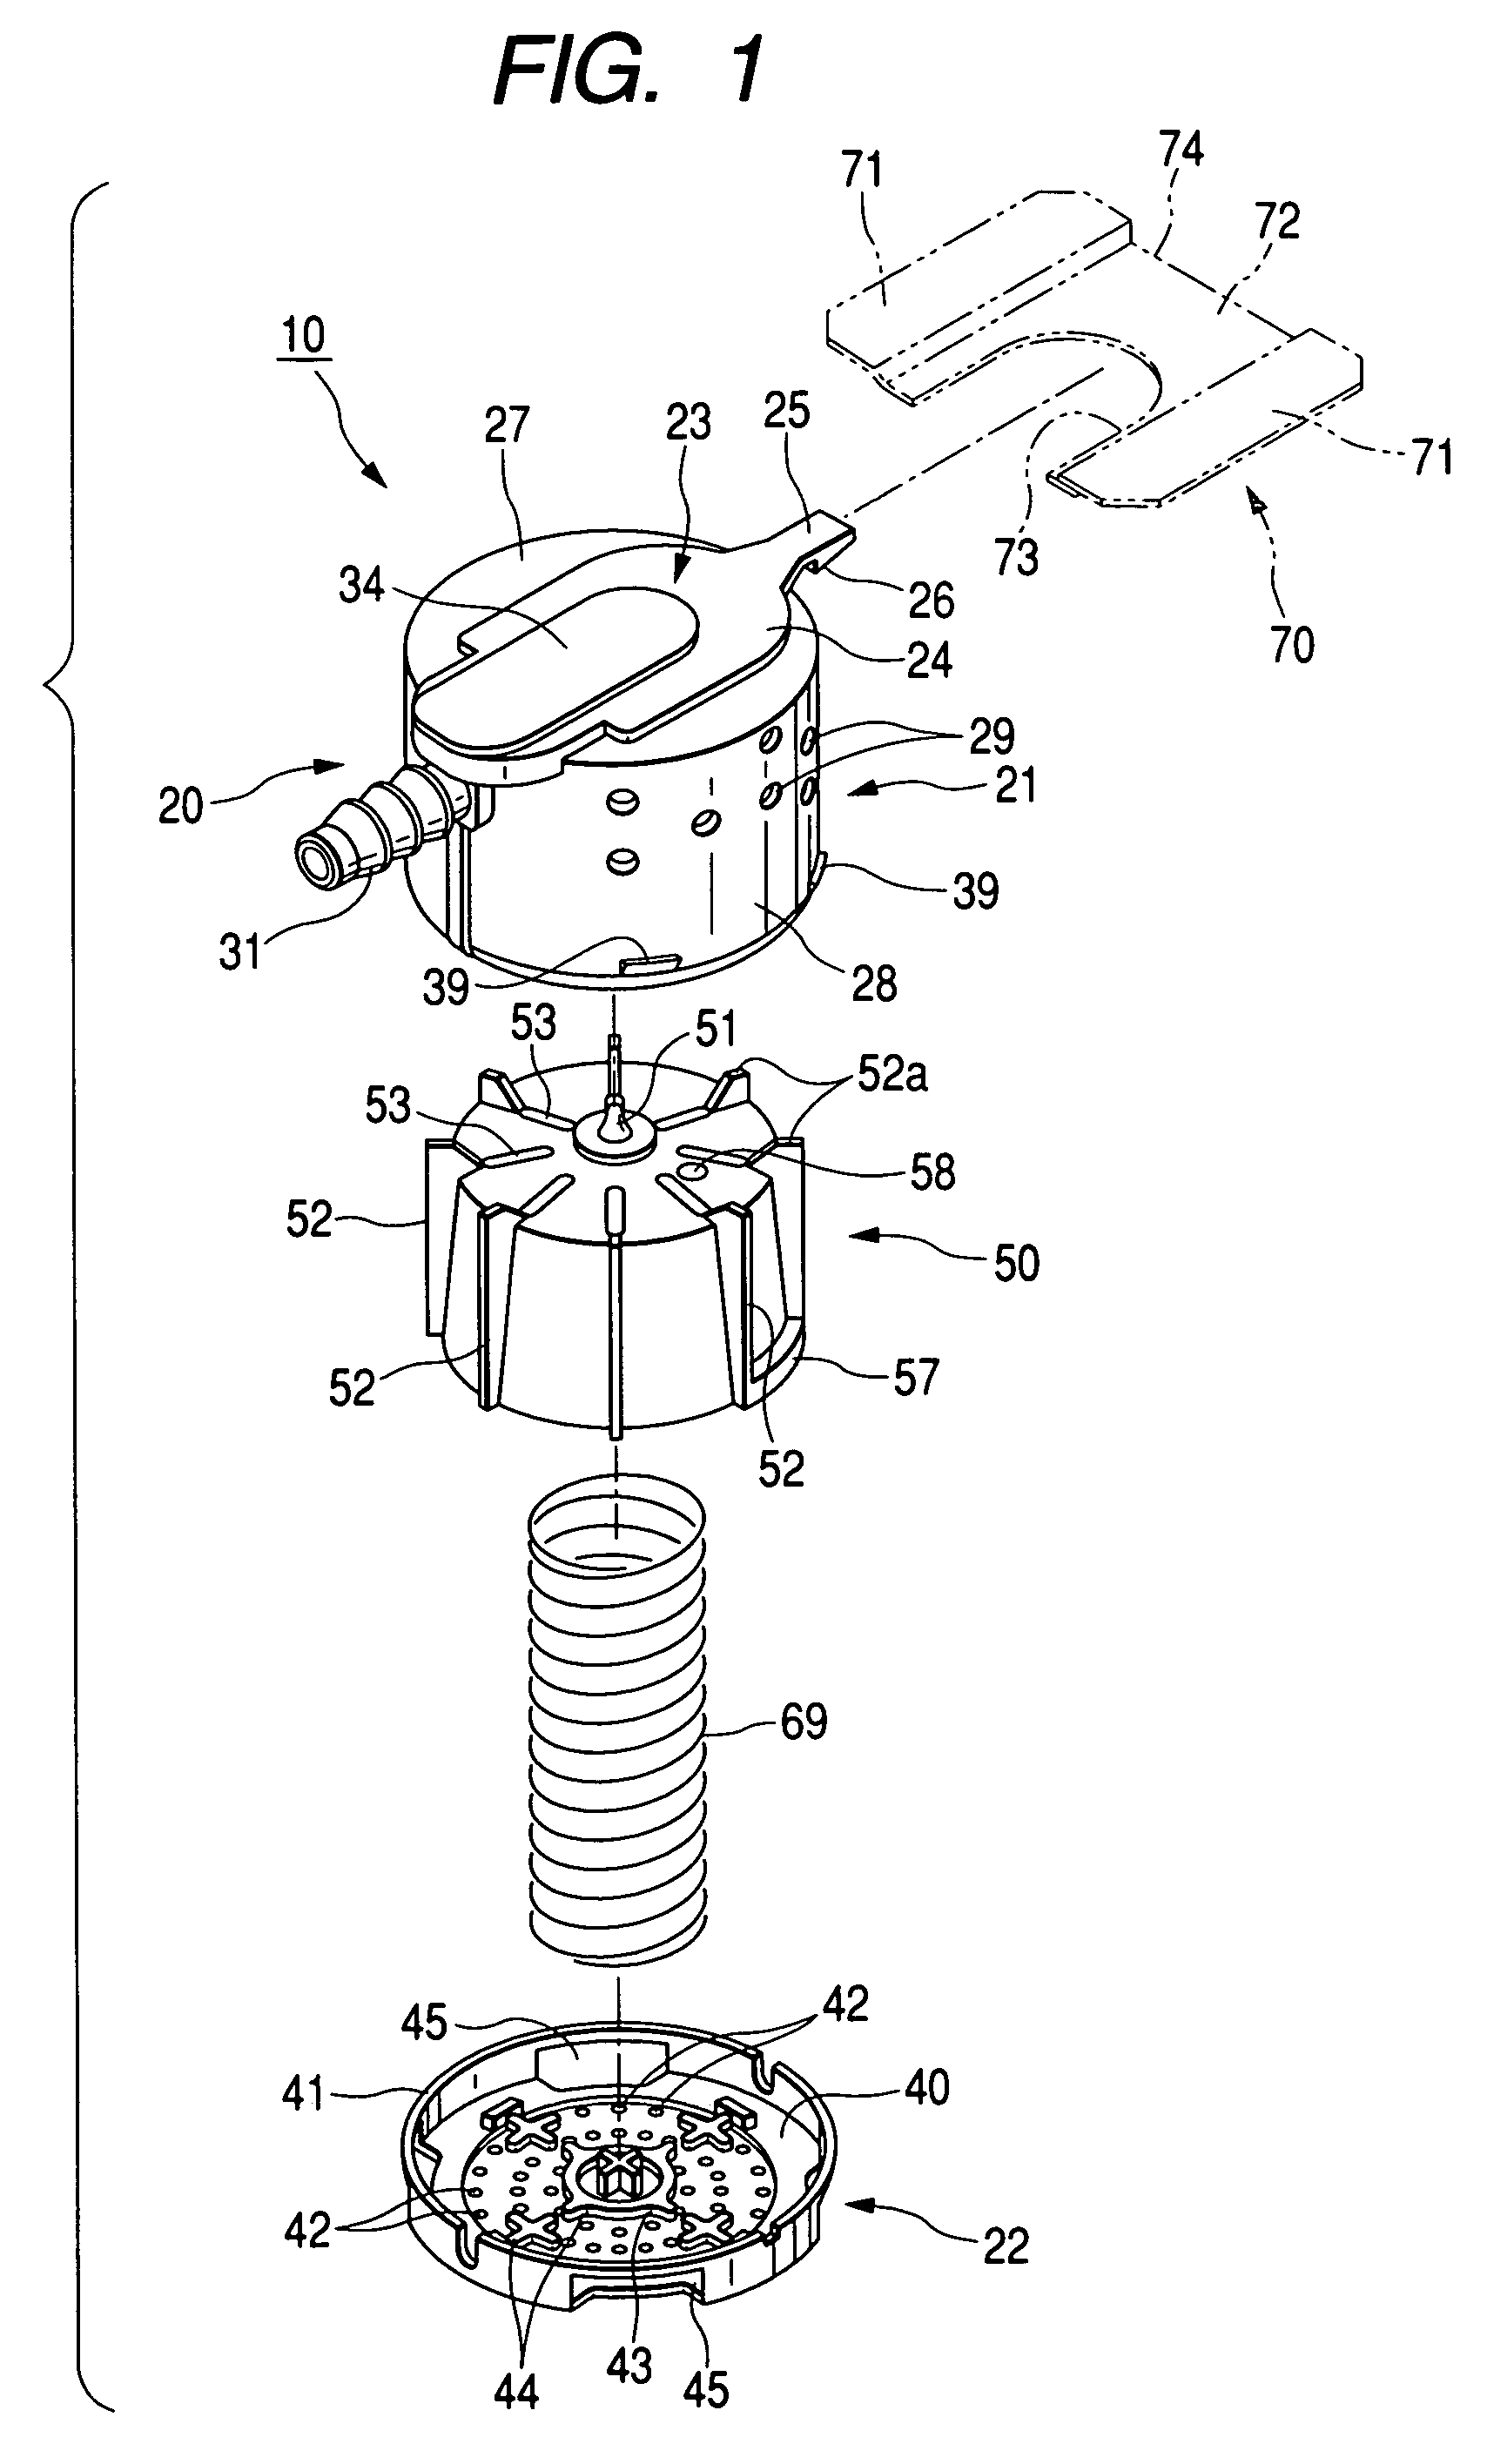 Float valve device